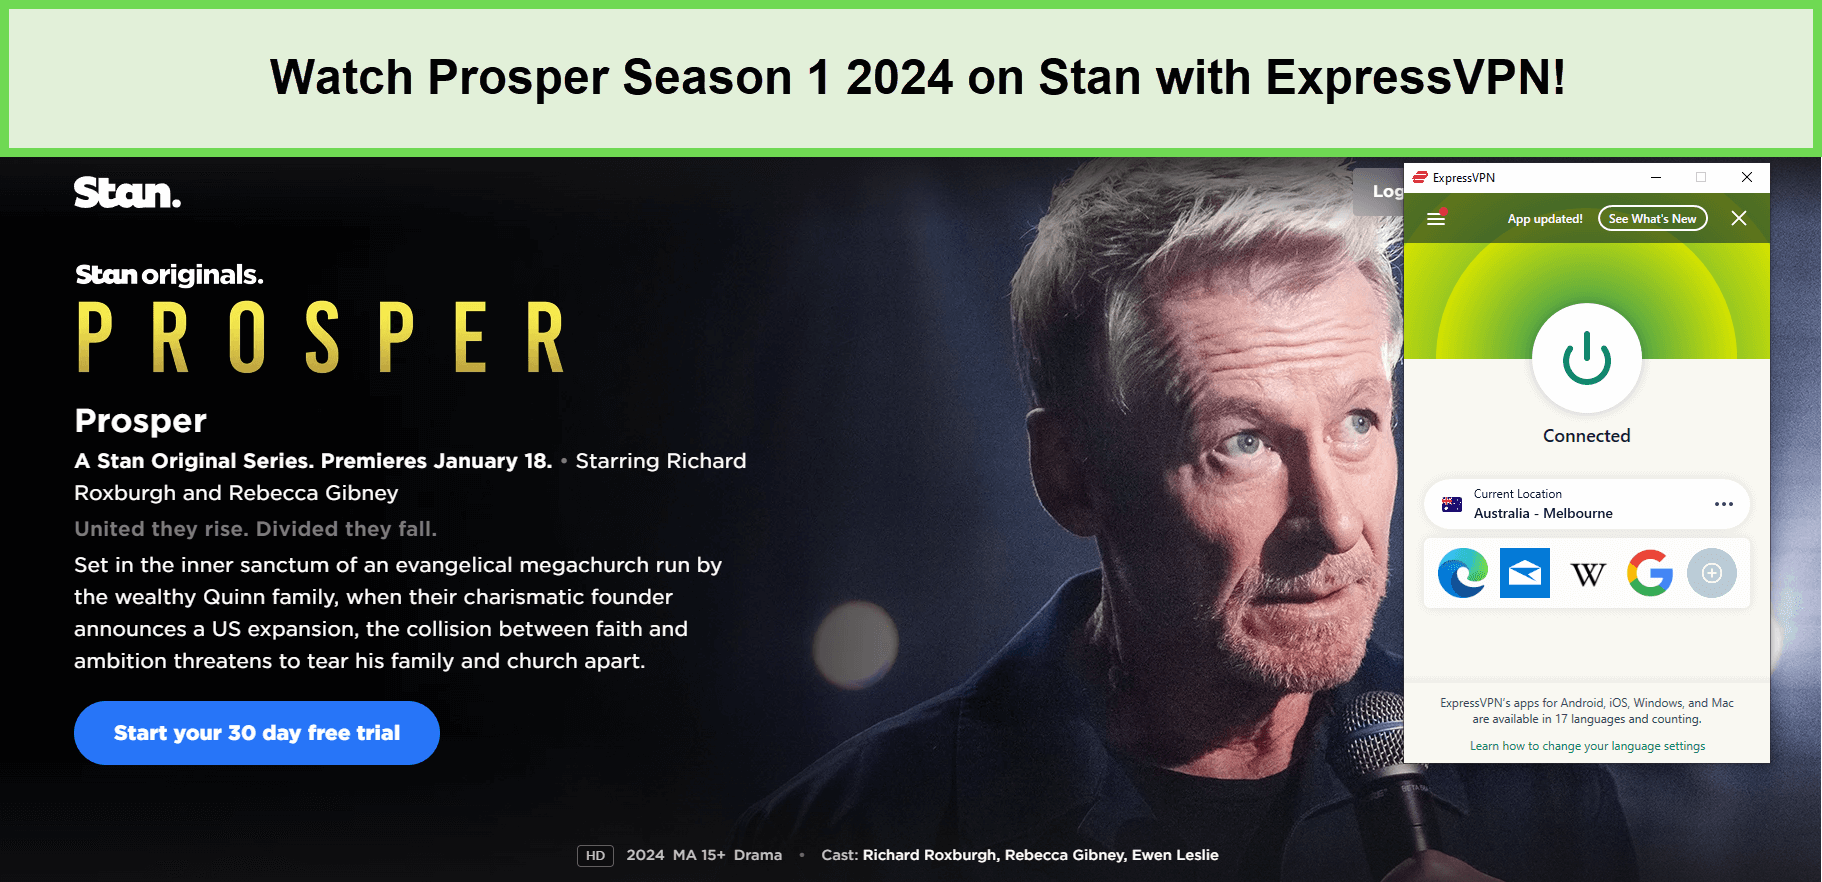 Watch-Prosper-Season-1-2024-in-Spain-on-Stan-with-ExpressVPN